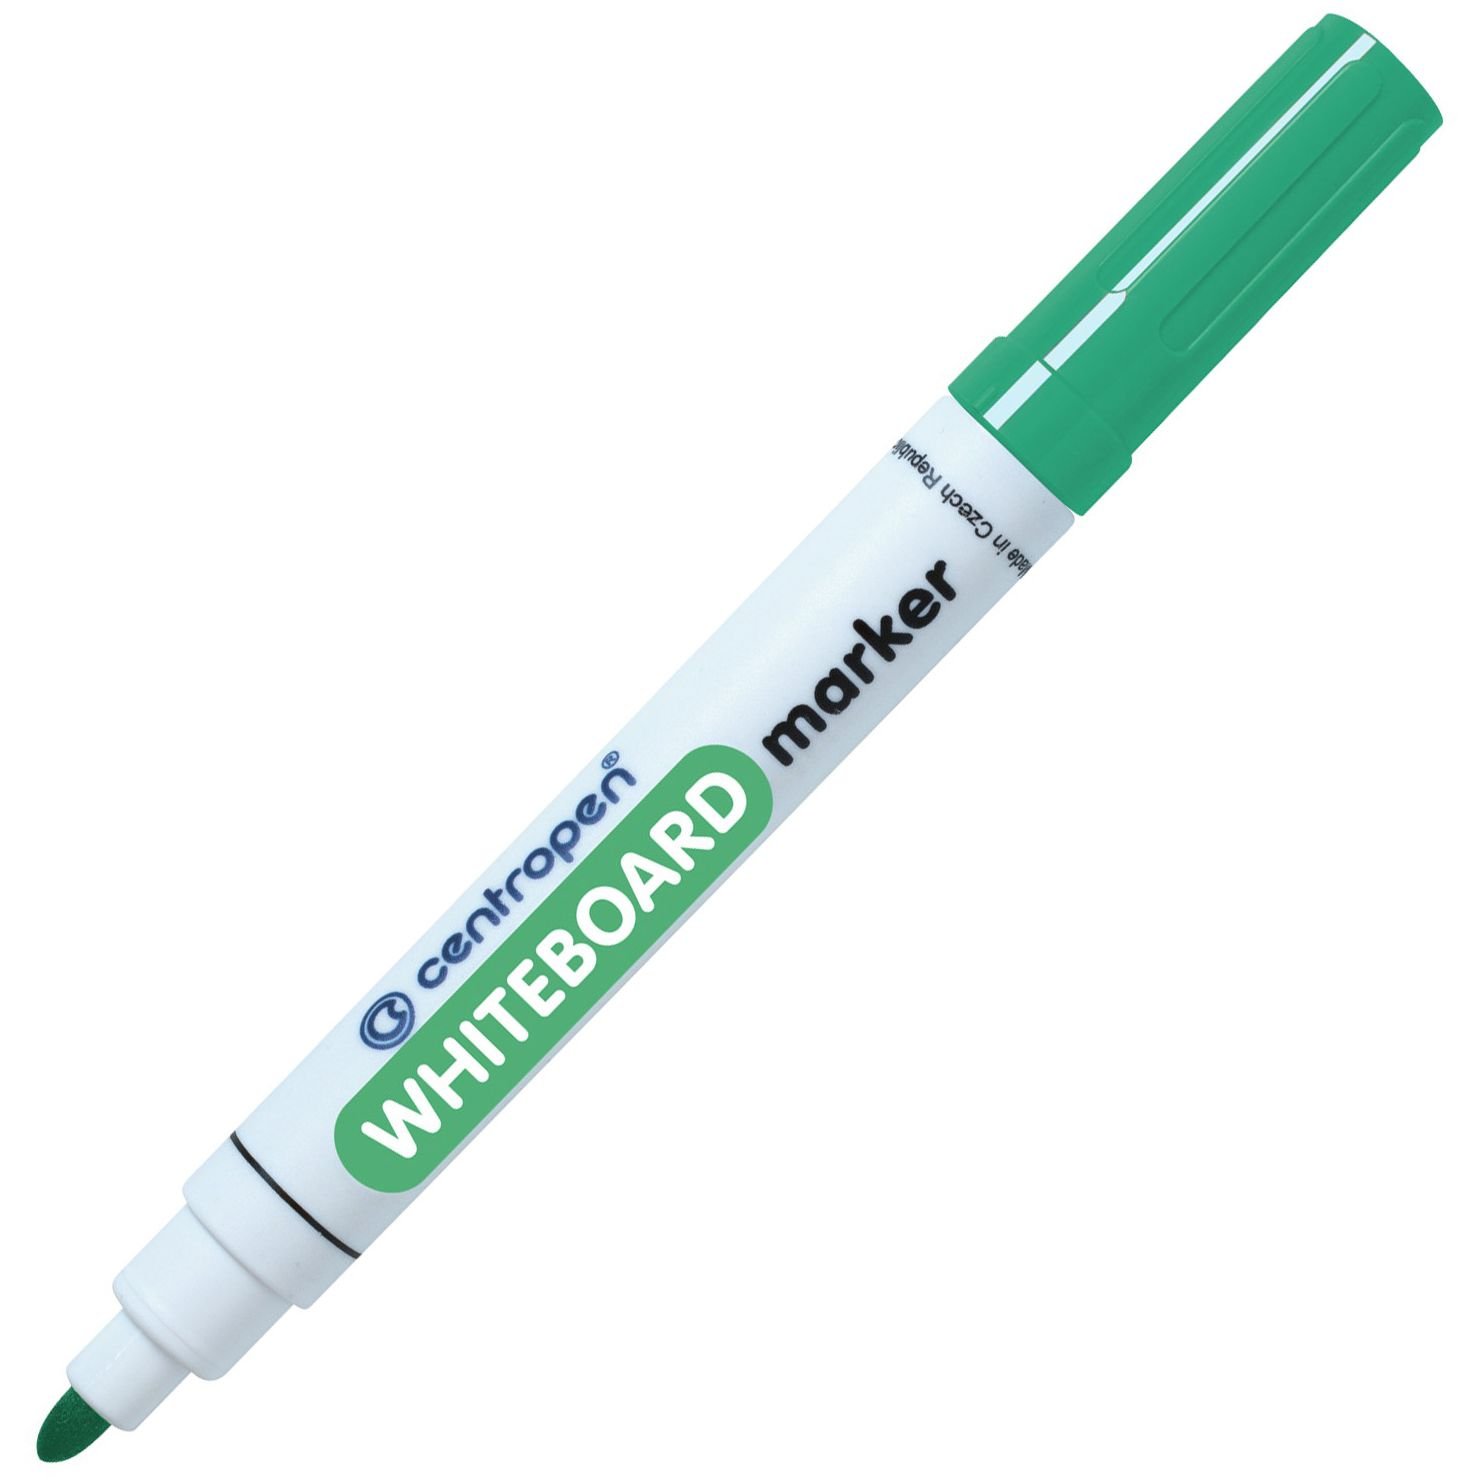 Маркер для досок Centropen WhiteBoard конусообразный 2.5 мм зеленый (8559/04) - фото 1